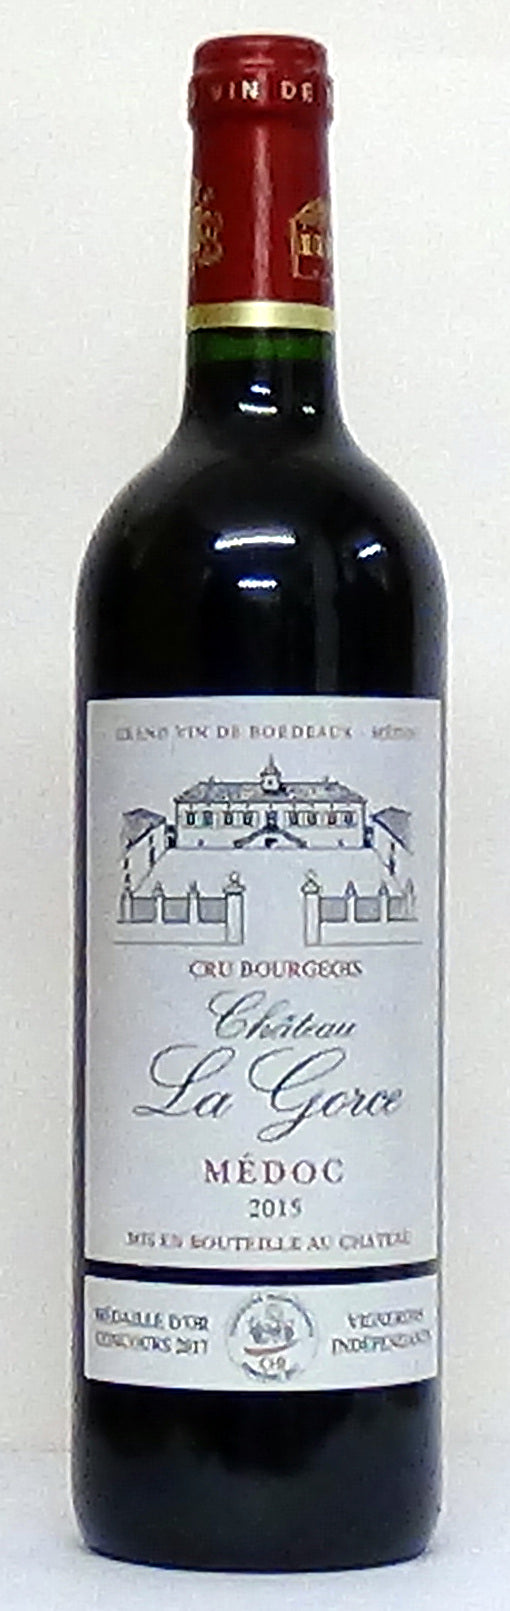 Chateau La Gorce Cru Bourgeois Medoc, Bordeaux - Bordeaux Wines - Wine